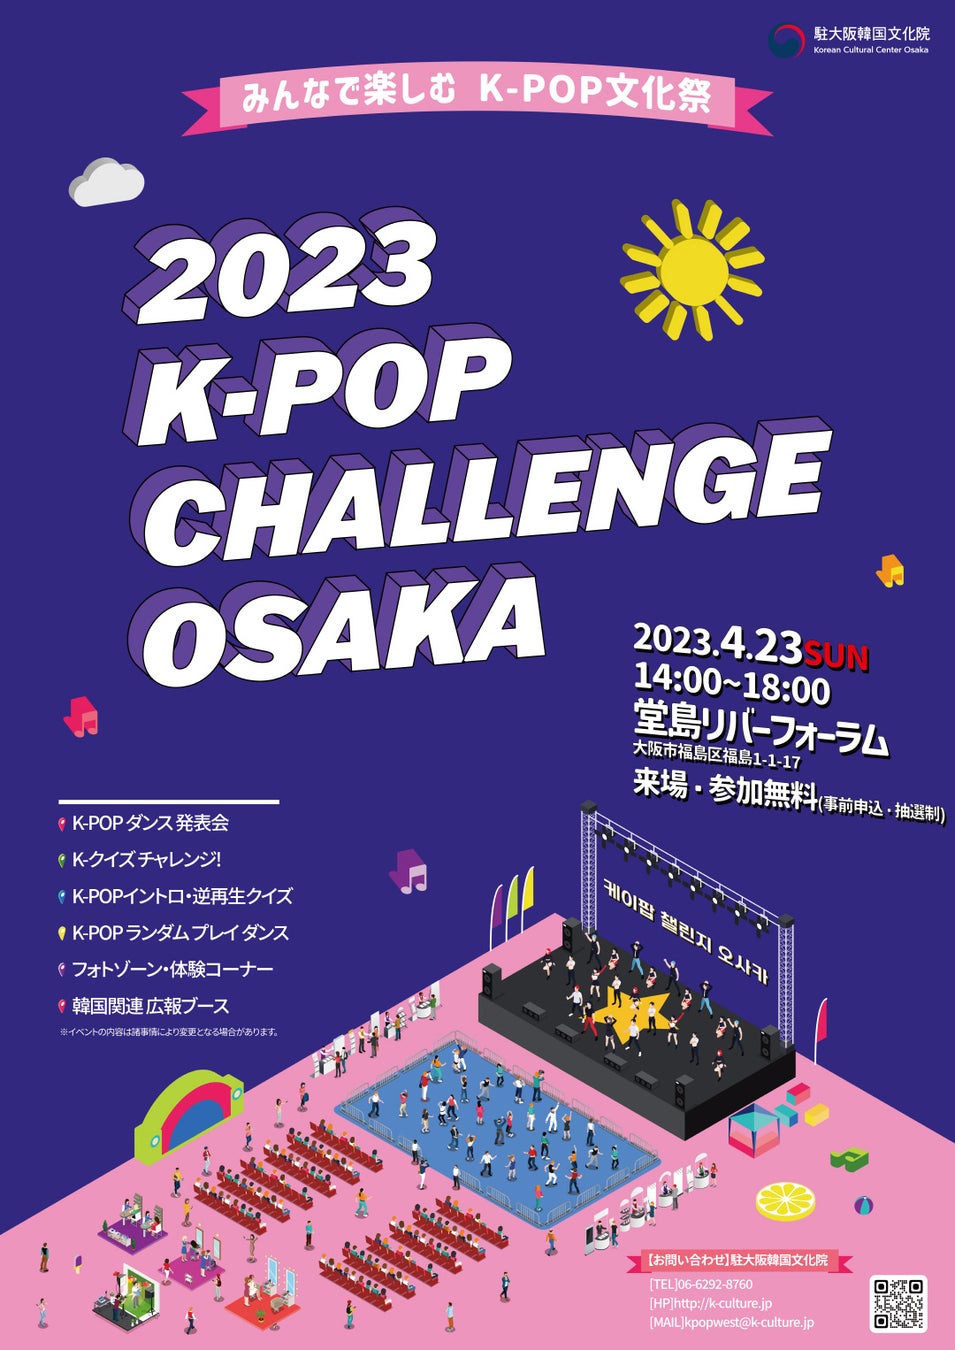 4月1日(土)より韓国コスメ「ongredients」のPOPUPストアが、熊本で初となる「アミュプラザくまもと」にて、K-POPグループ「TREASURE」とともに上陸。